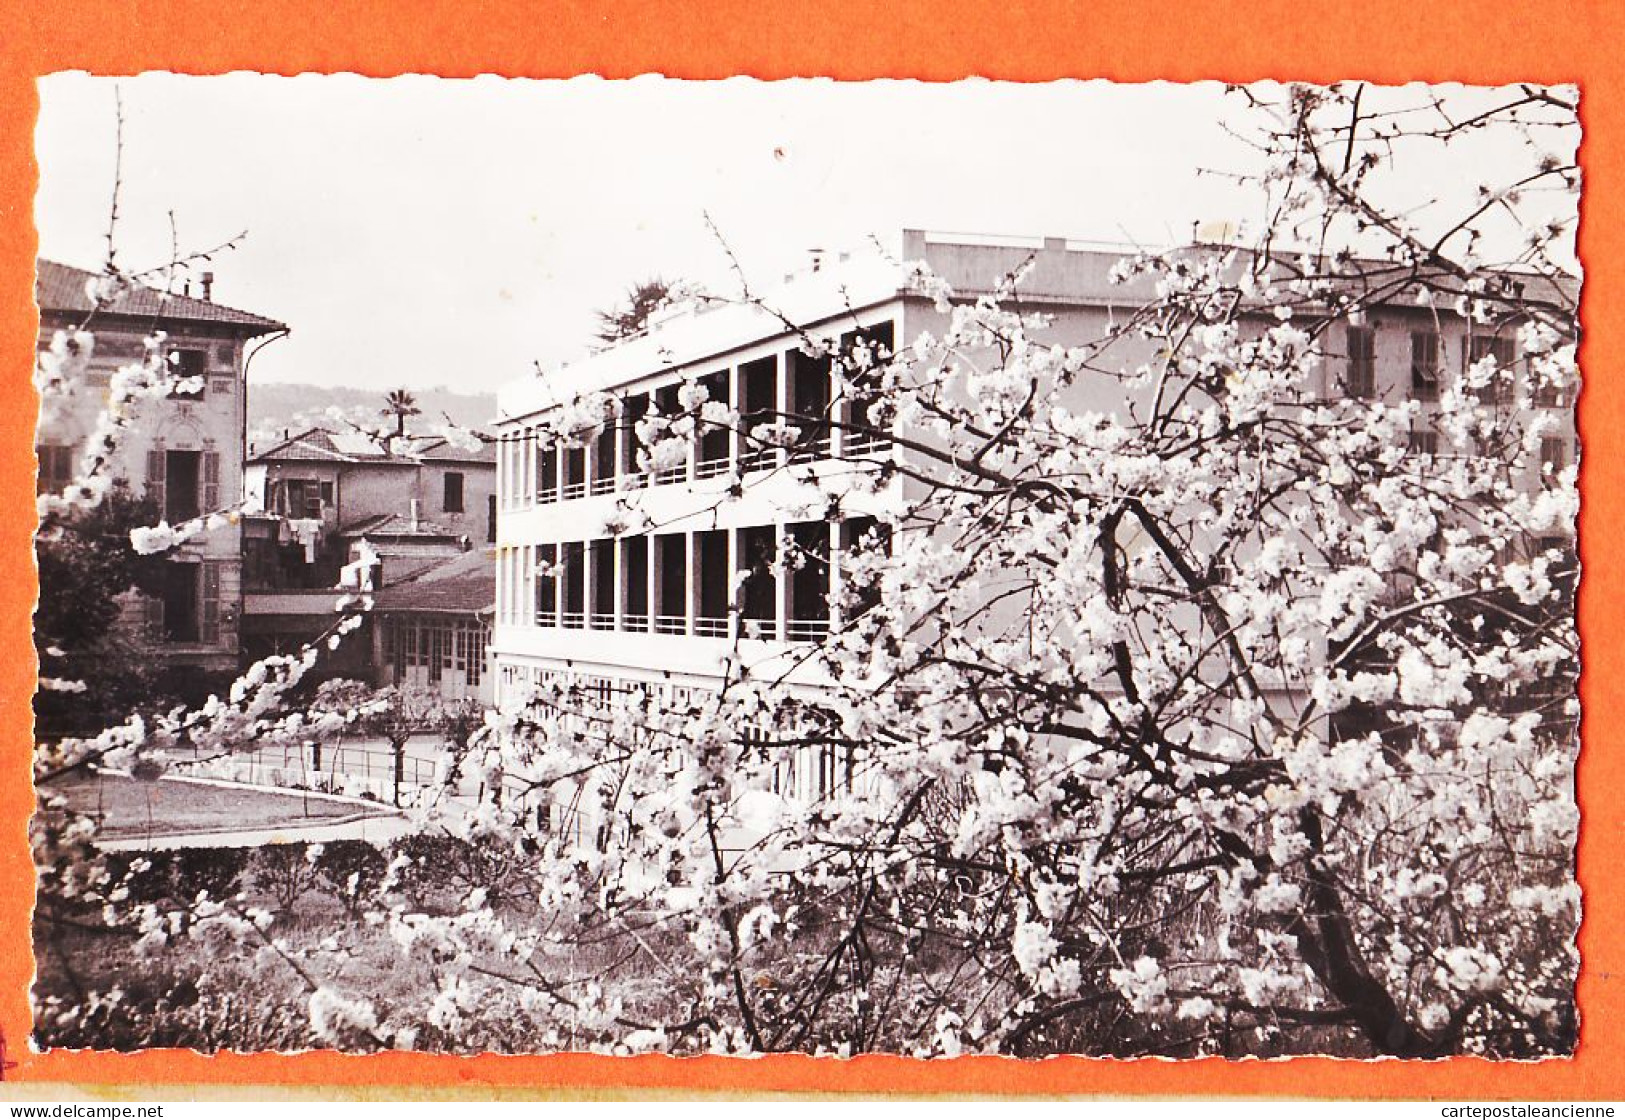 03507 / NICE Pavillon NOTRE-DAME N-D Foyer SAINT-DOMINIQUE Repos Convalescence Avenue ACACIAS 1950s Photo-Bromure - Gesundheit, Krankenhäuser